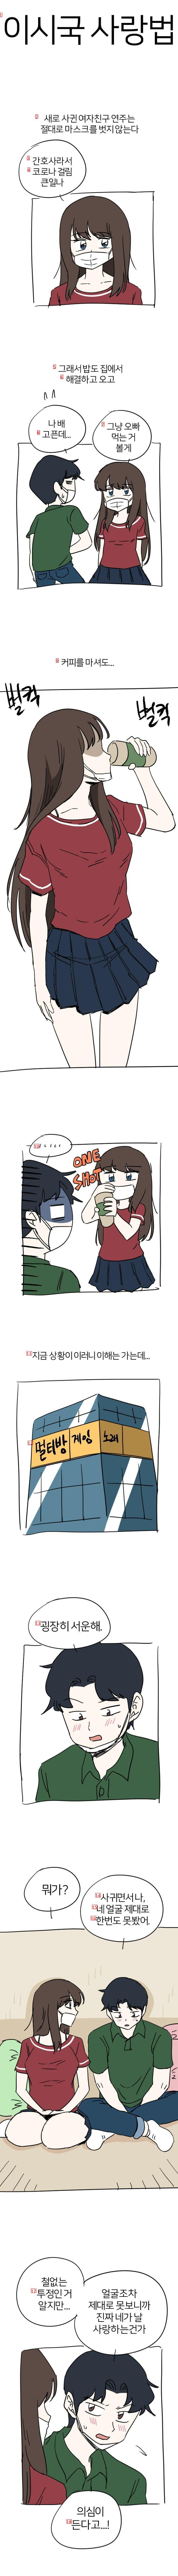 ㅇㅎ?) 마스크를 벗지 않는 여친을 서운해 하는 만화.manhwa